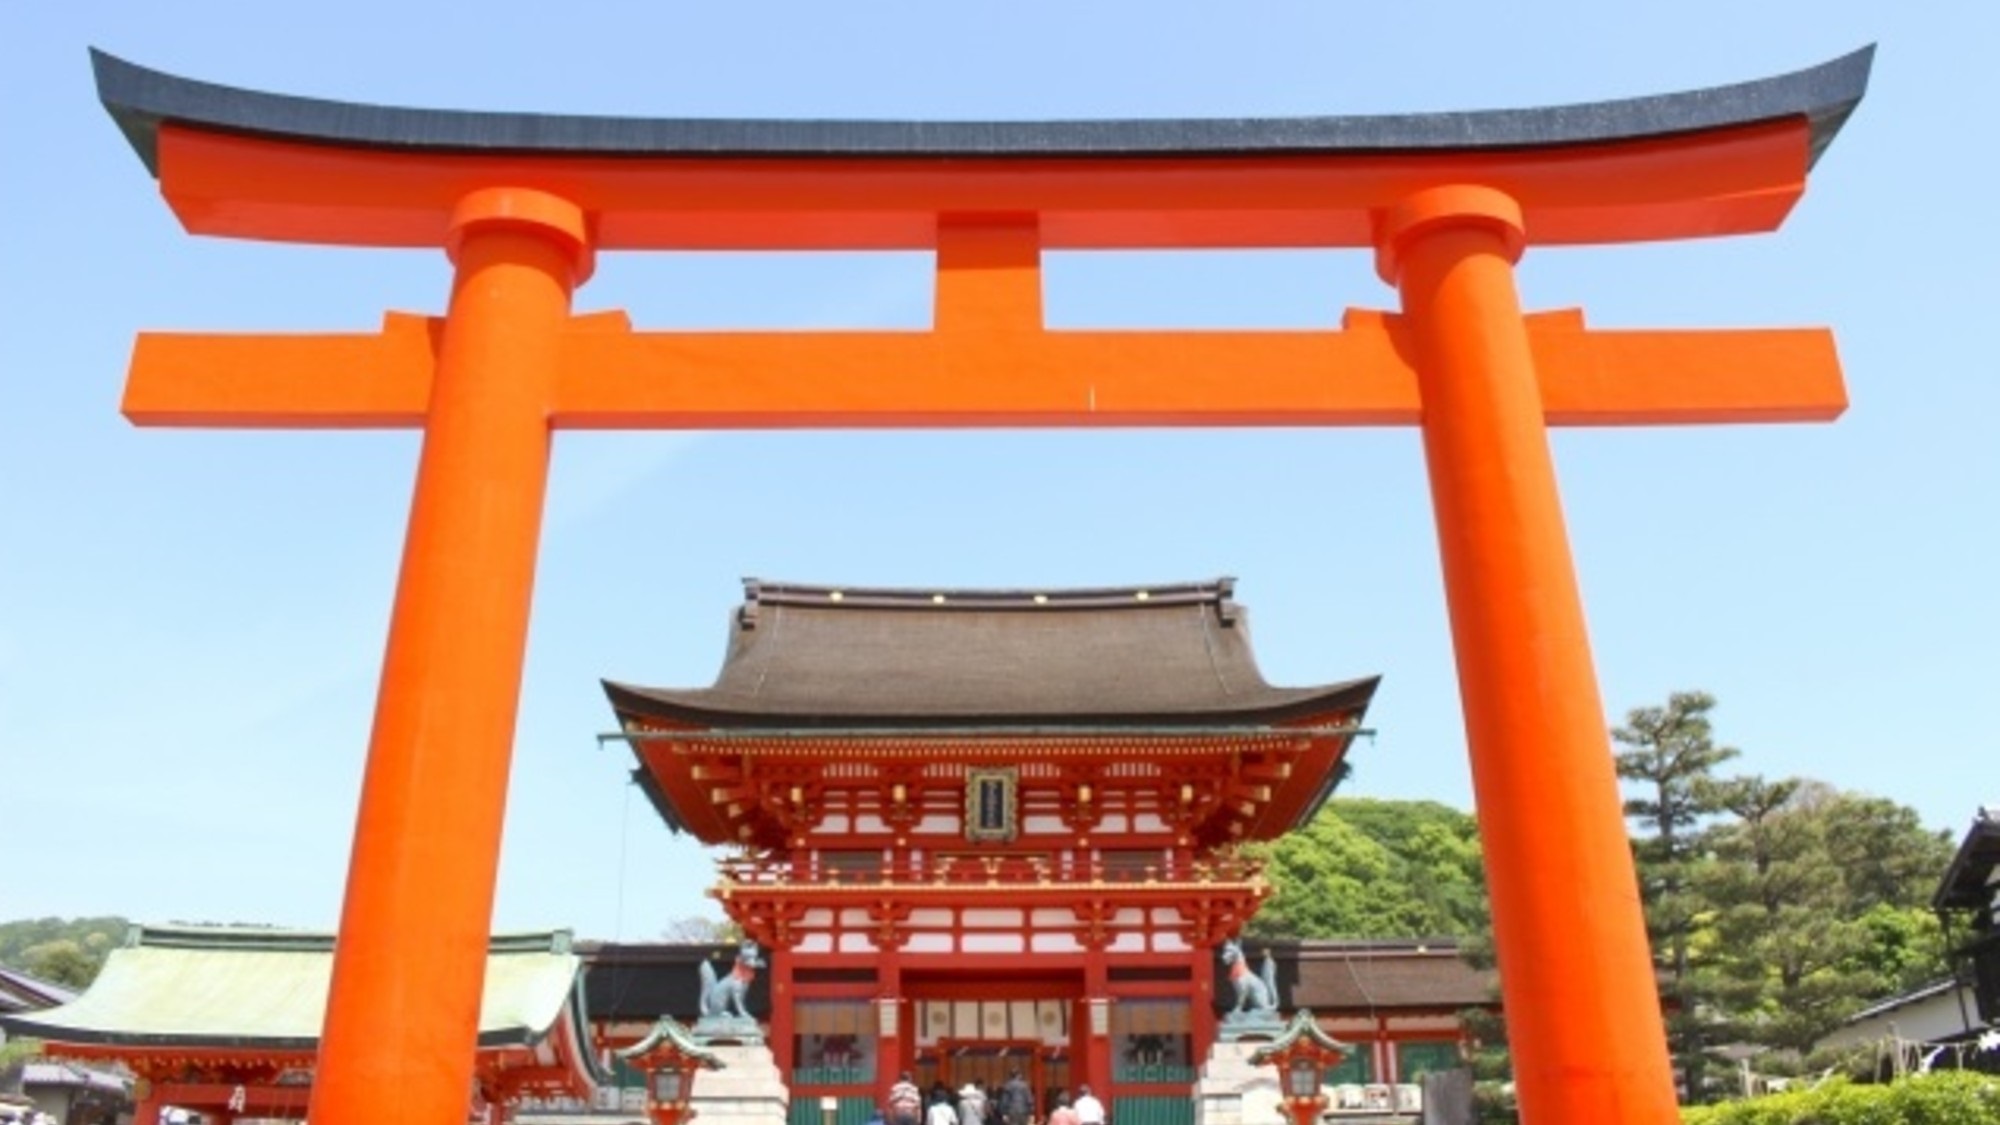  【伏見区】伏見稲荷大社は世界で1番知られている日本の観光スポット。通称「お稲荷さん」